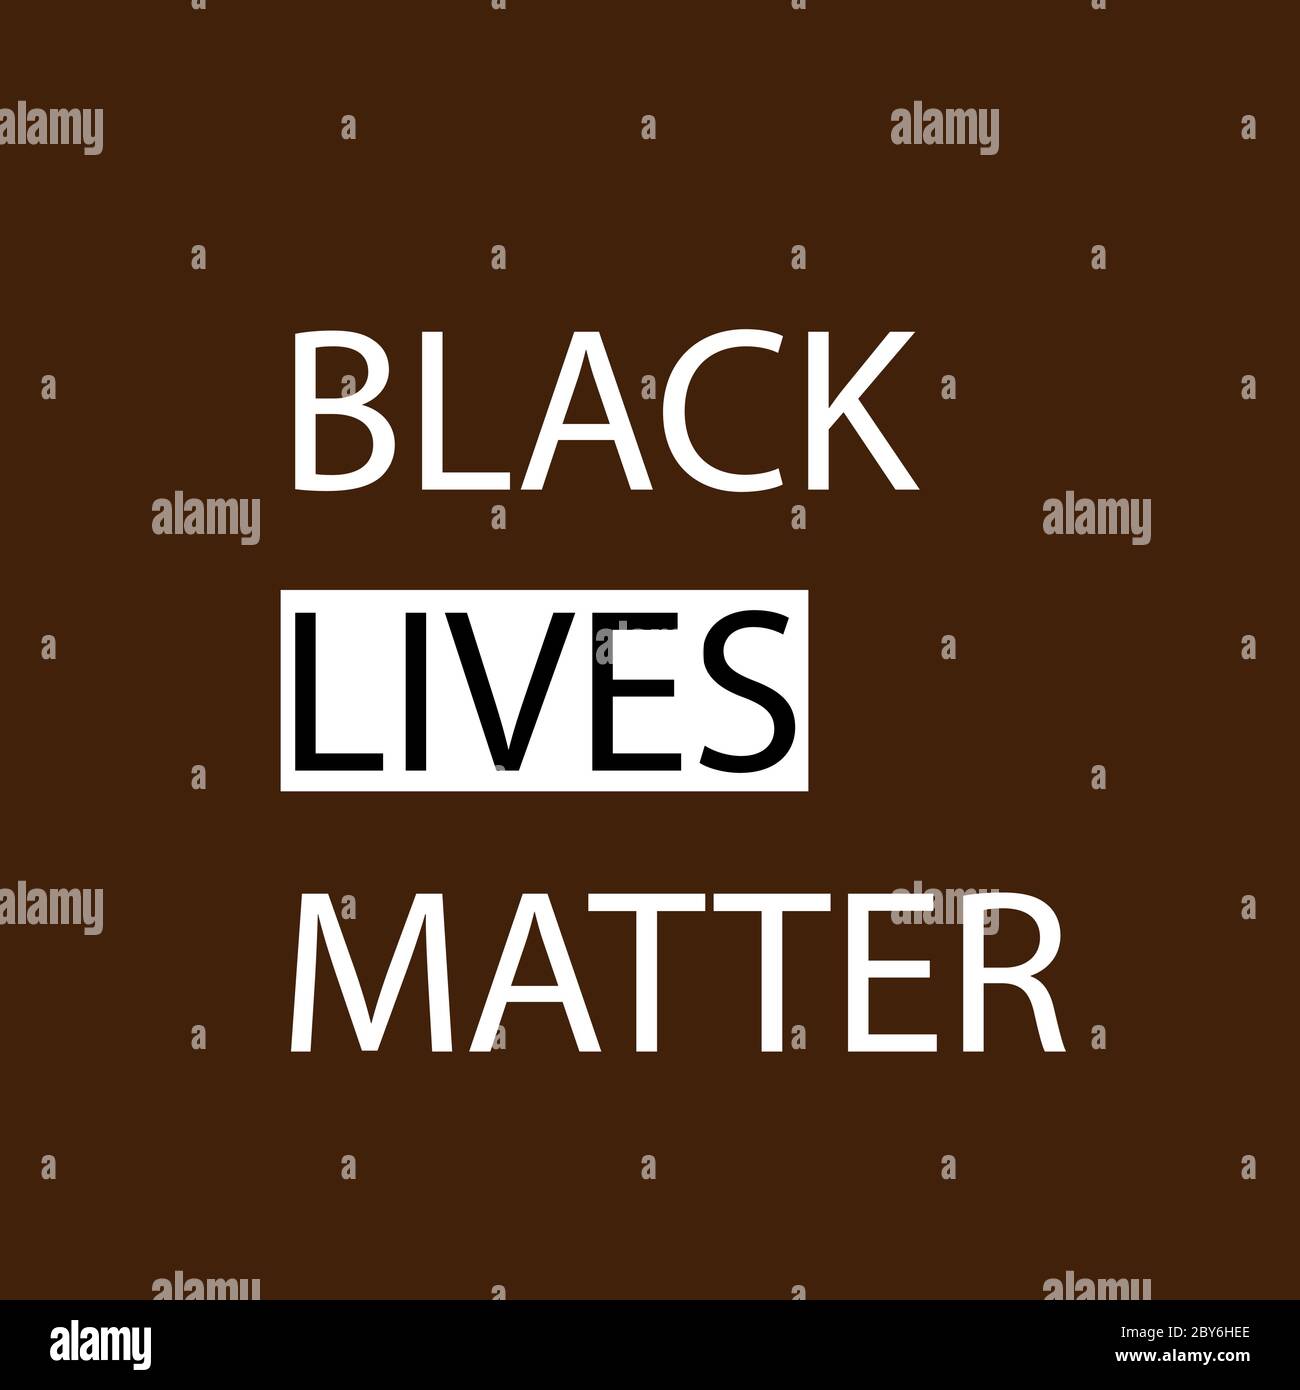 Black Lives Matter (BLM) Grafik Illustration für die Verwendung als Poster, um das Bewusstsein für rassische Ungleichheit zu erhöhen. Polizei Brutalität und Vorurteile gegen AFR Stock Vektor